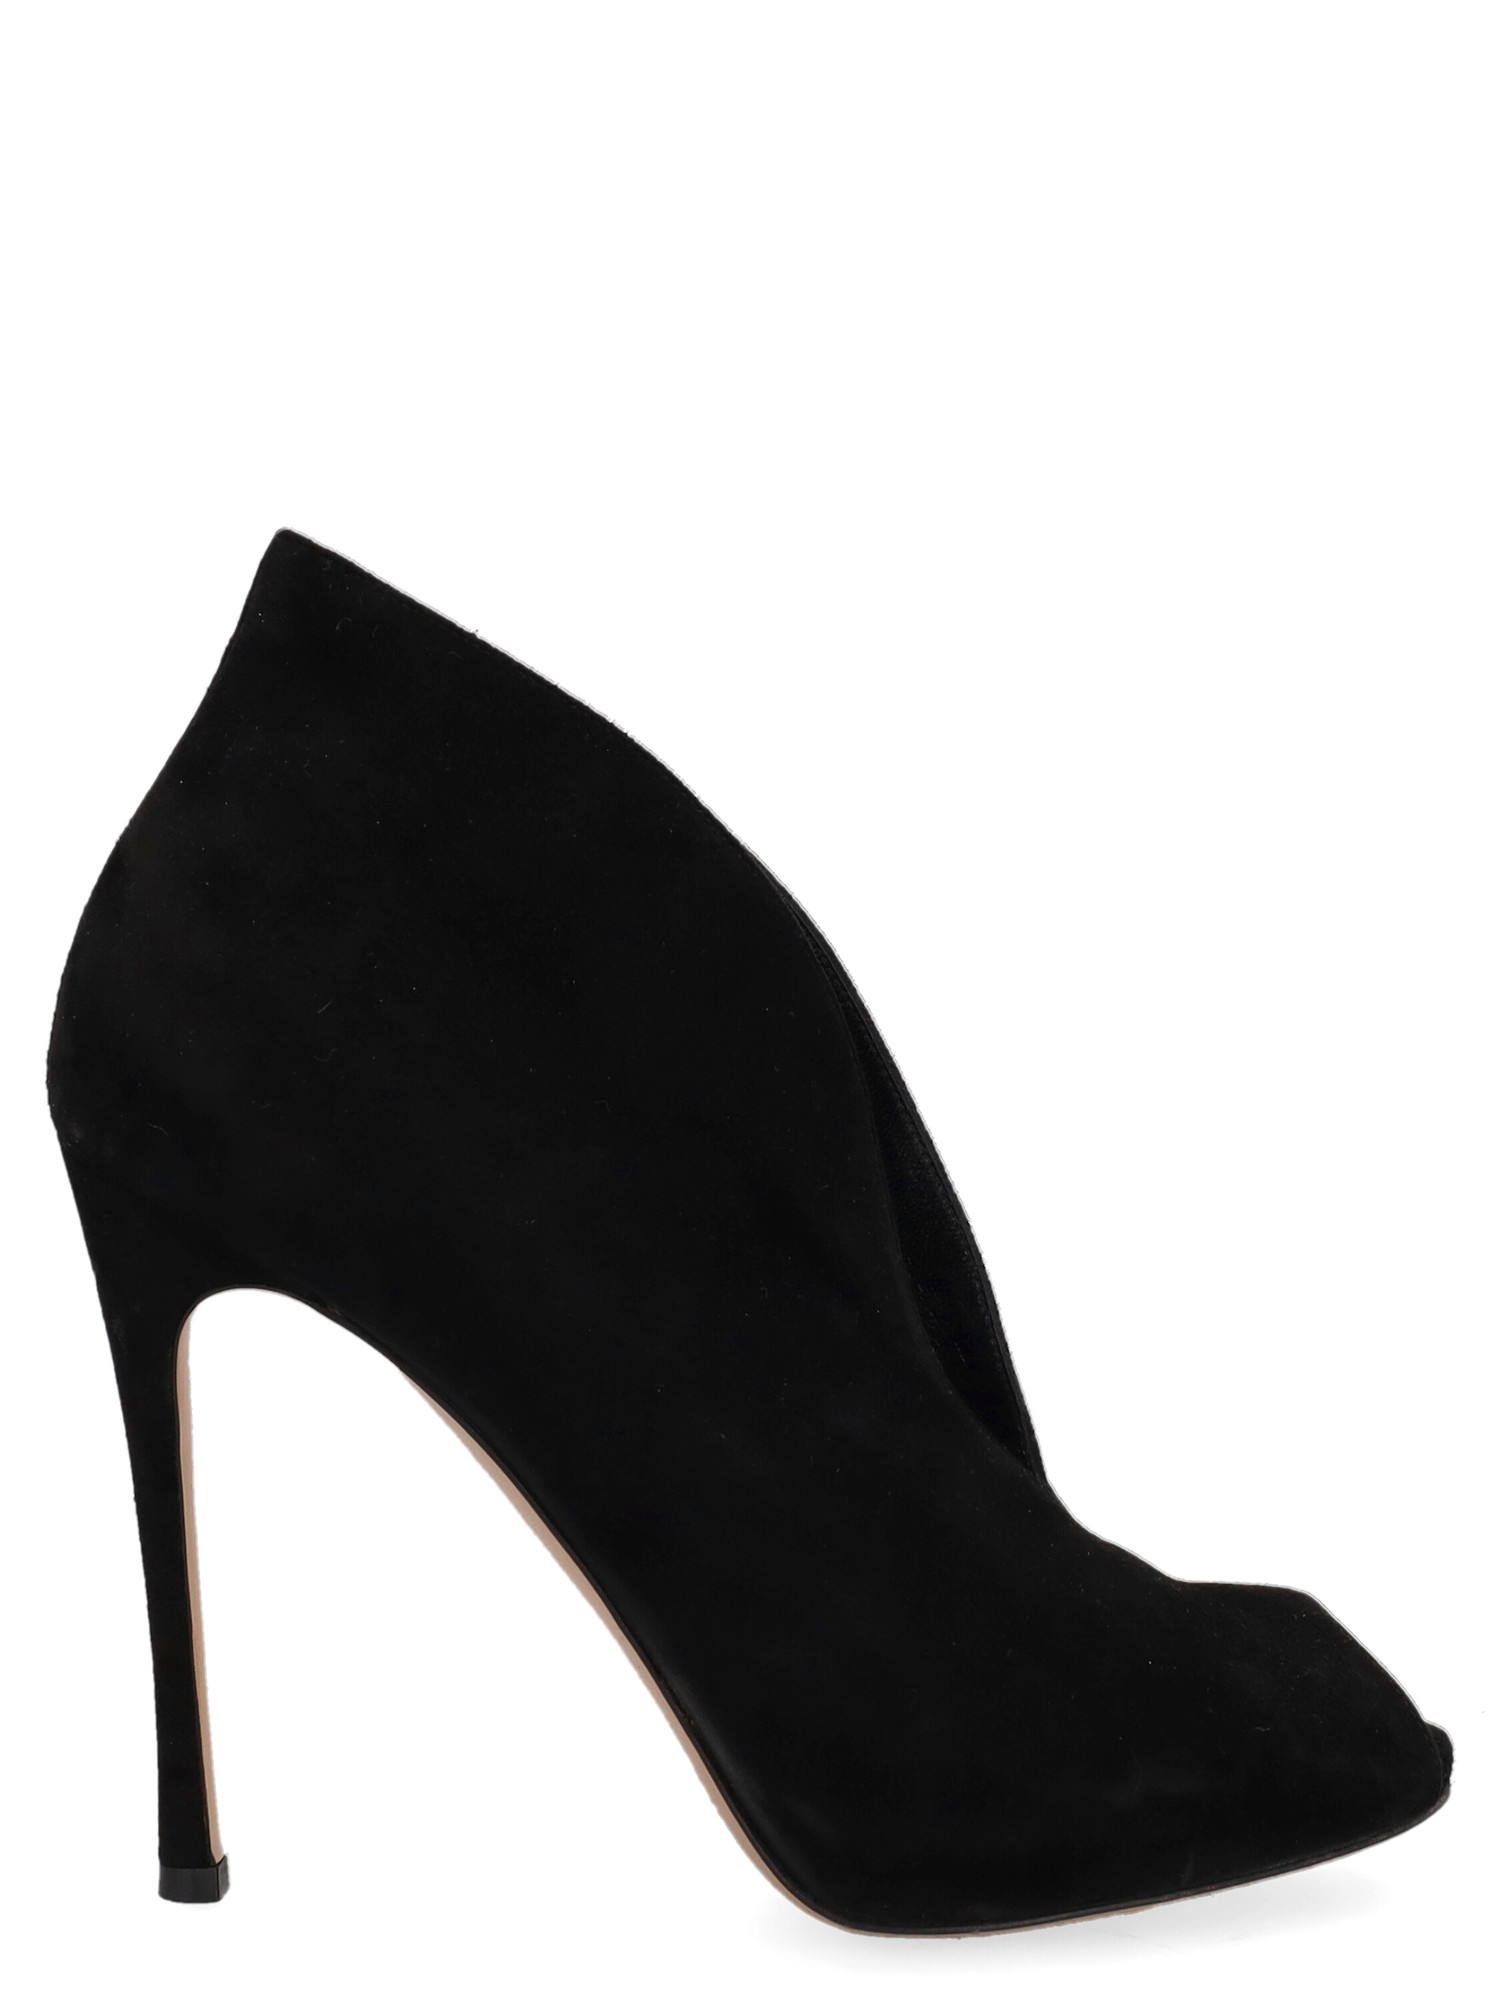 Sandales Pour Femme - Gianvito Rossi - En Leather Black - Taille: IT 39.5 - EU 39.5